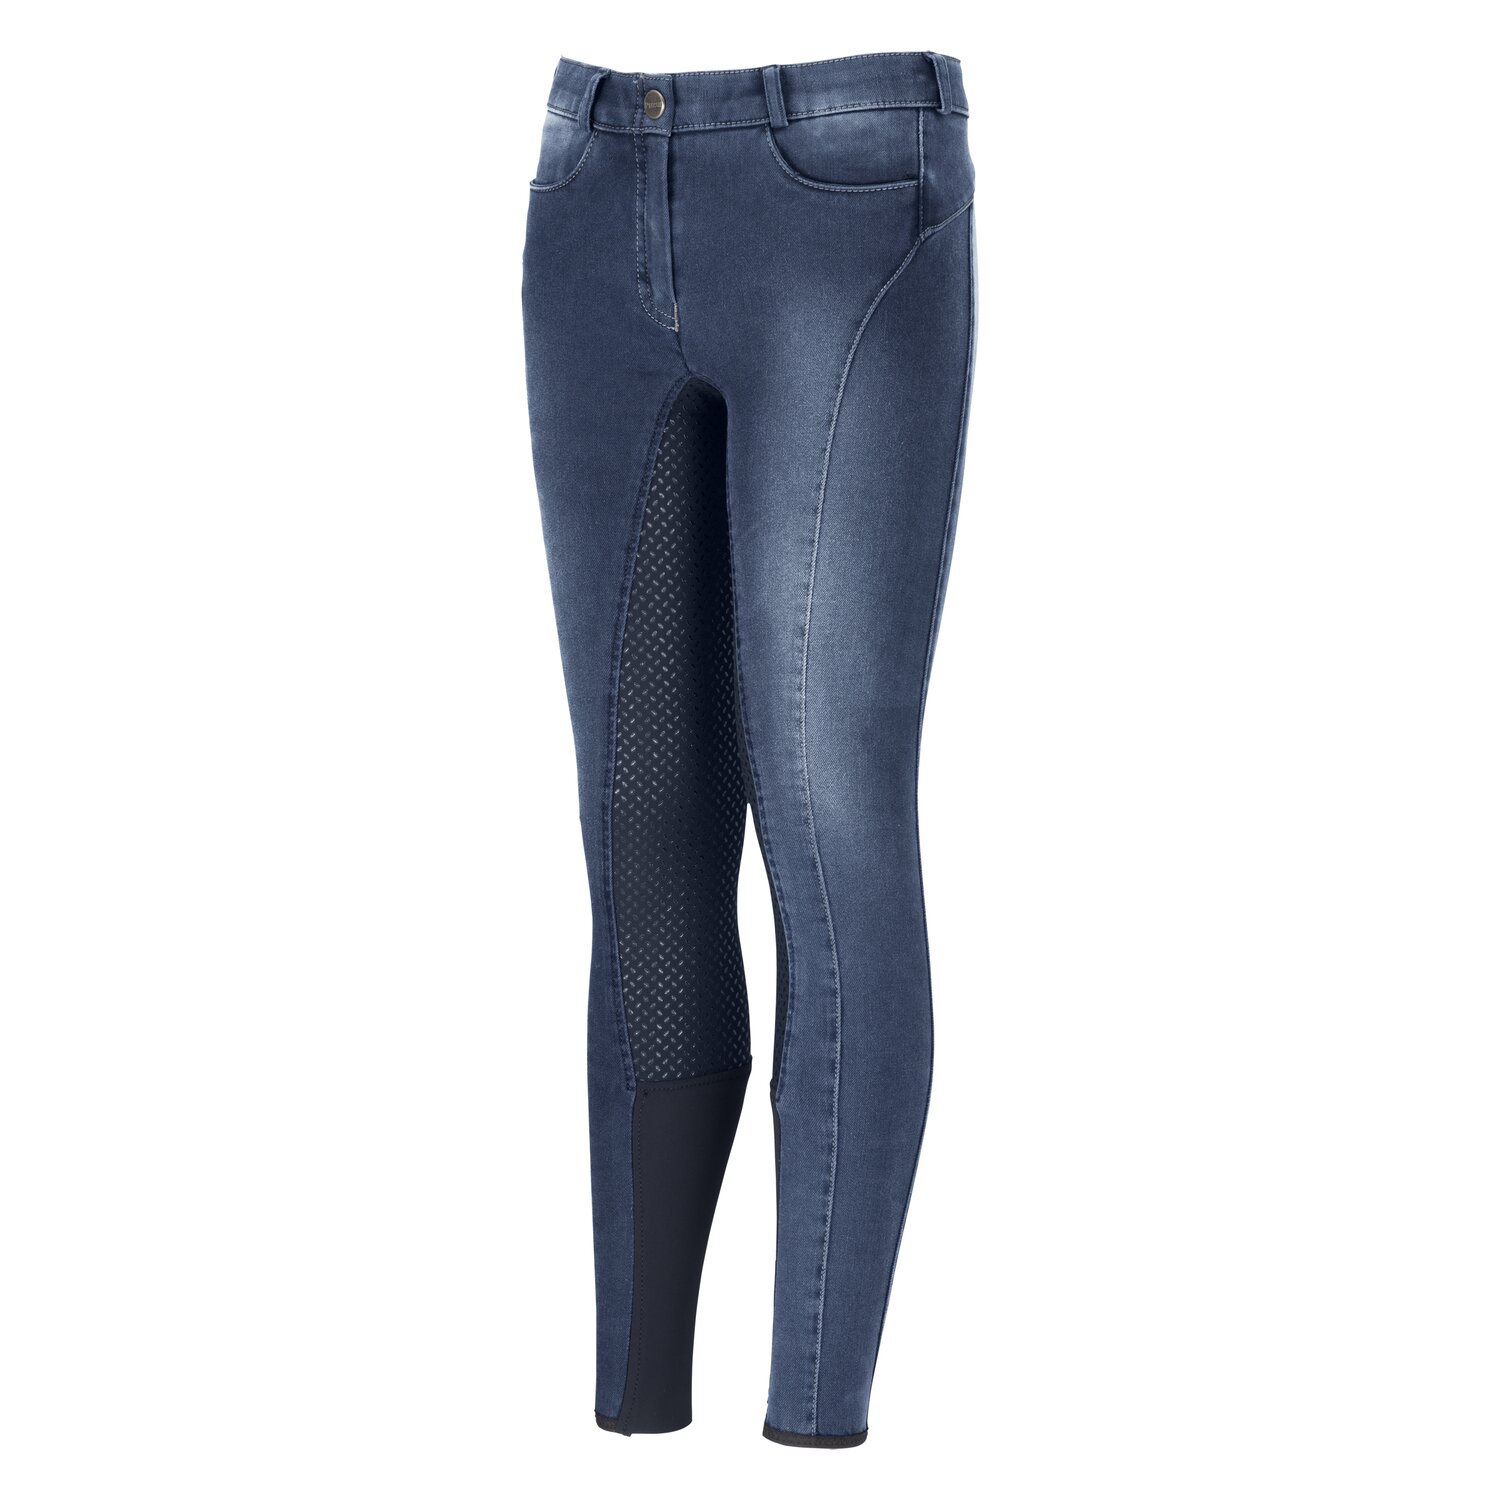 PIKEUR Gesäßeinsatz-Reithose Tesia Grip Jeans Kids denim blue | 152